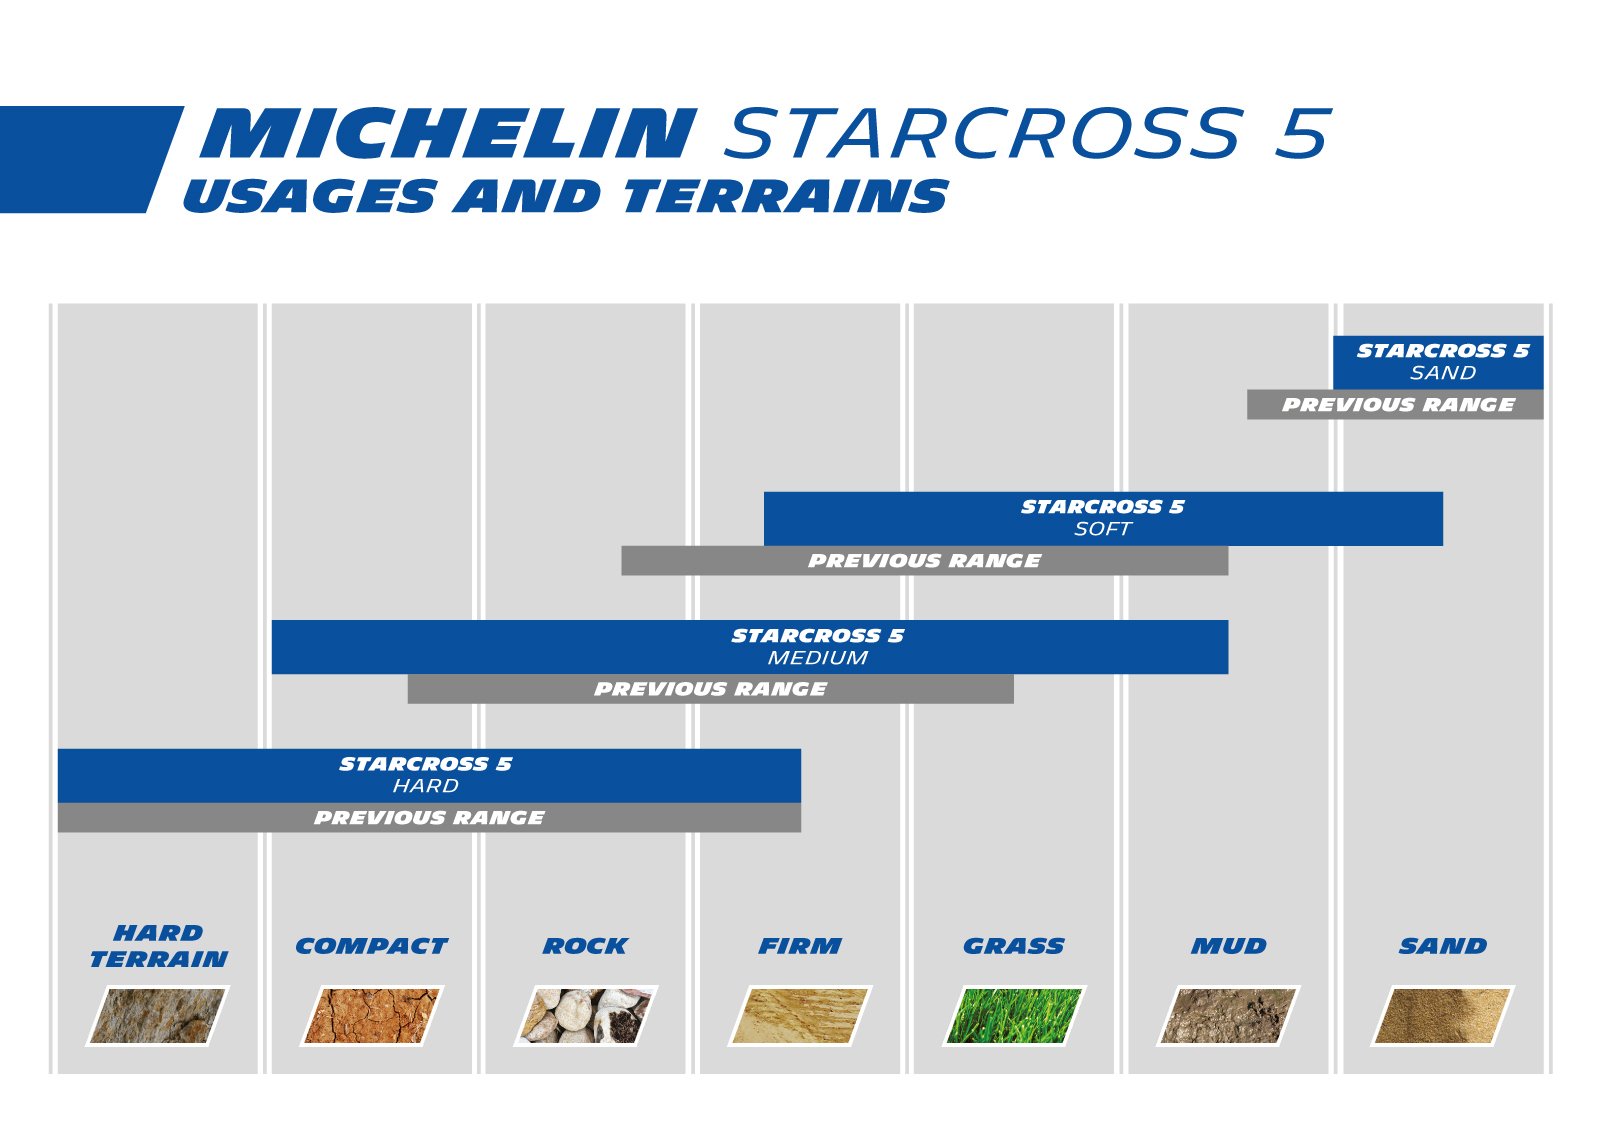 MICHELIN STARCROSS 5